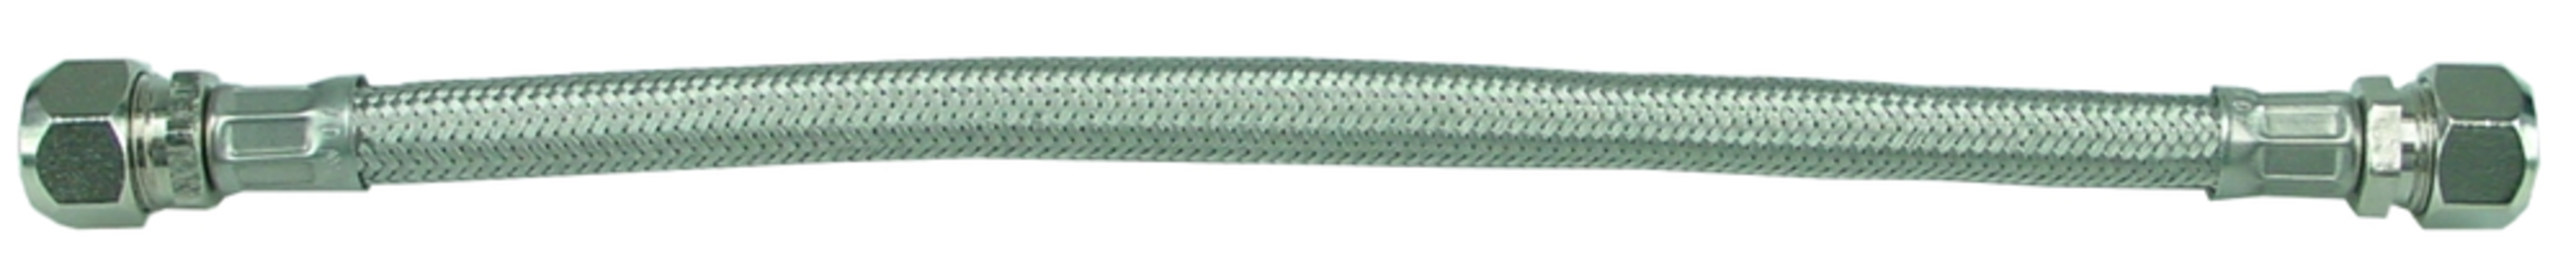 Sub KIWA metalen flex.aansluitslang 10x15 30 cm